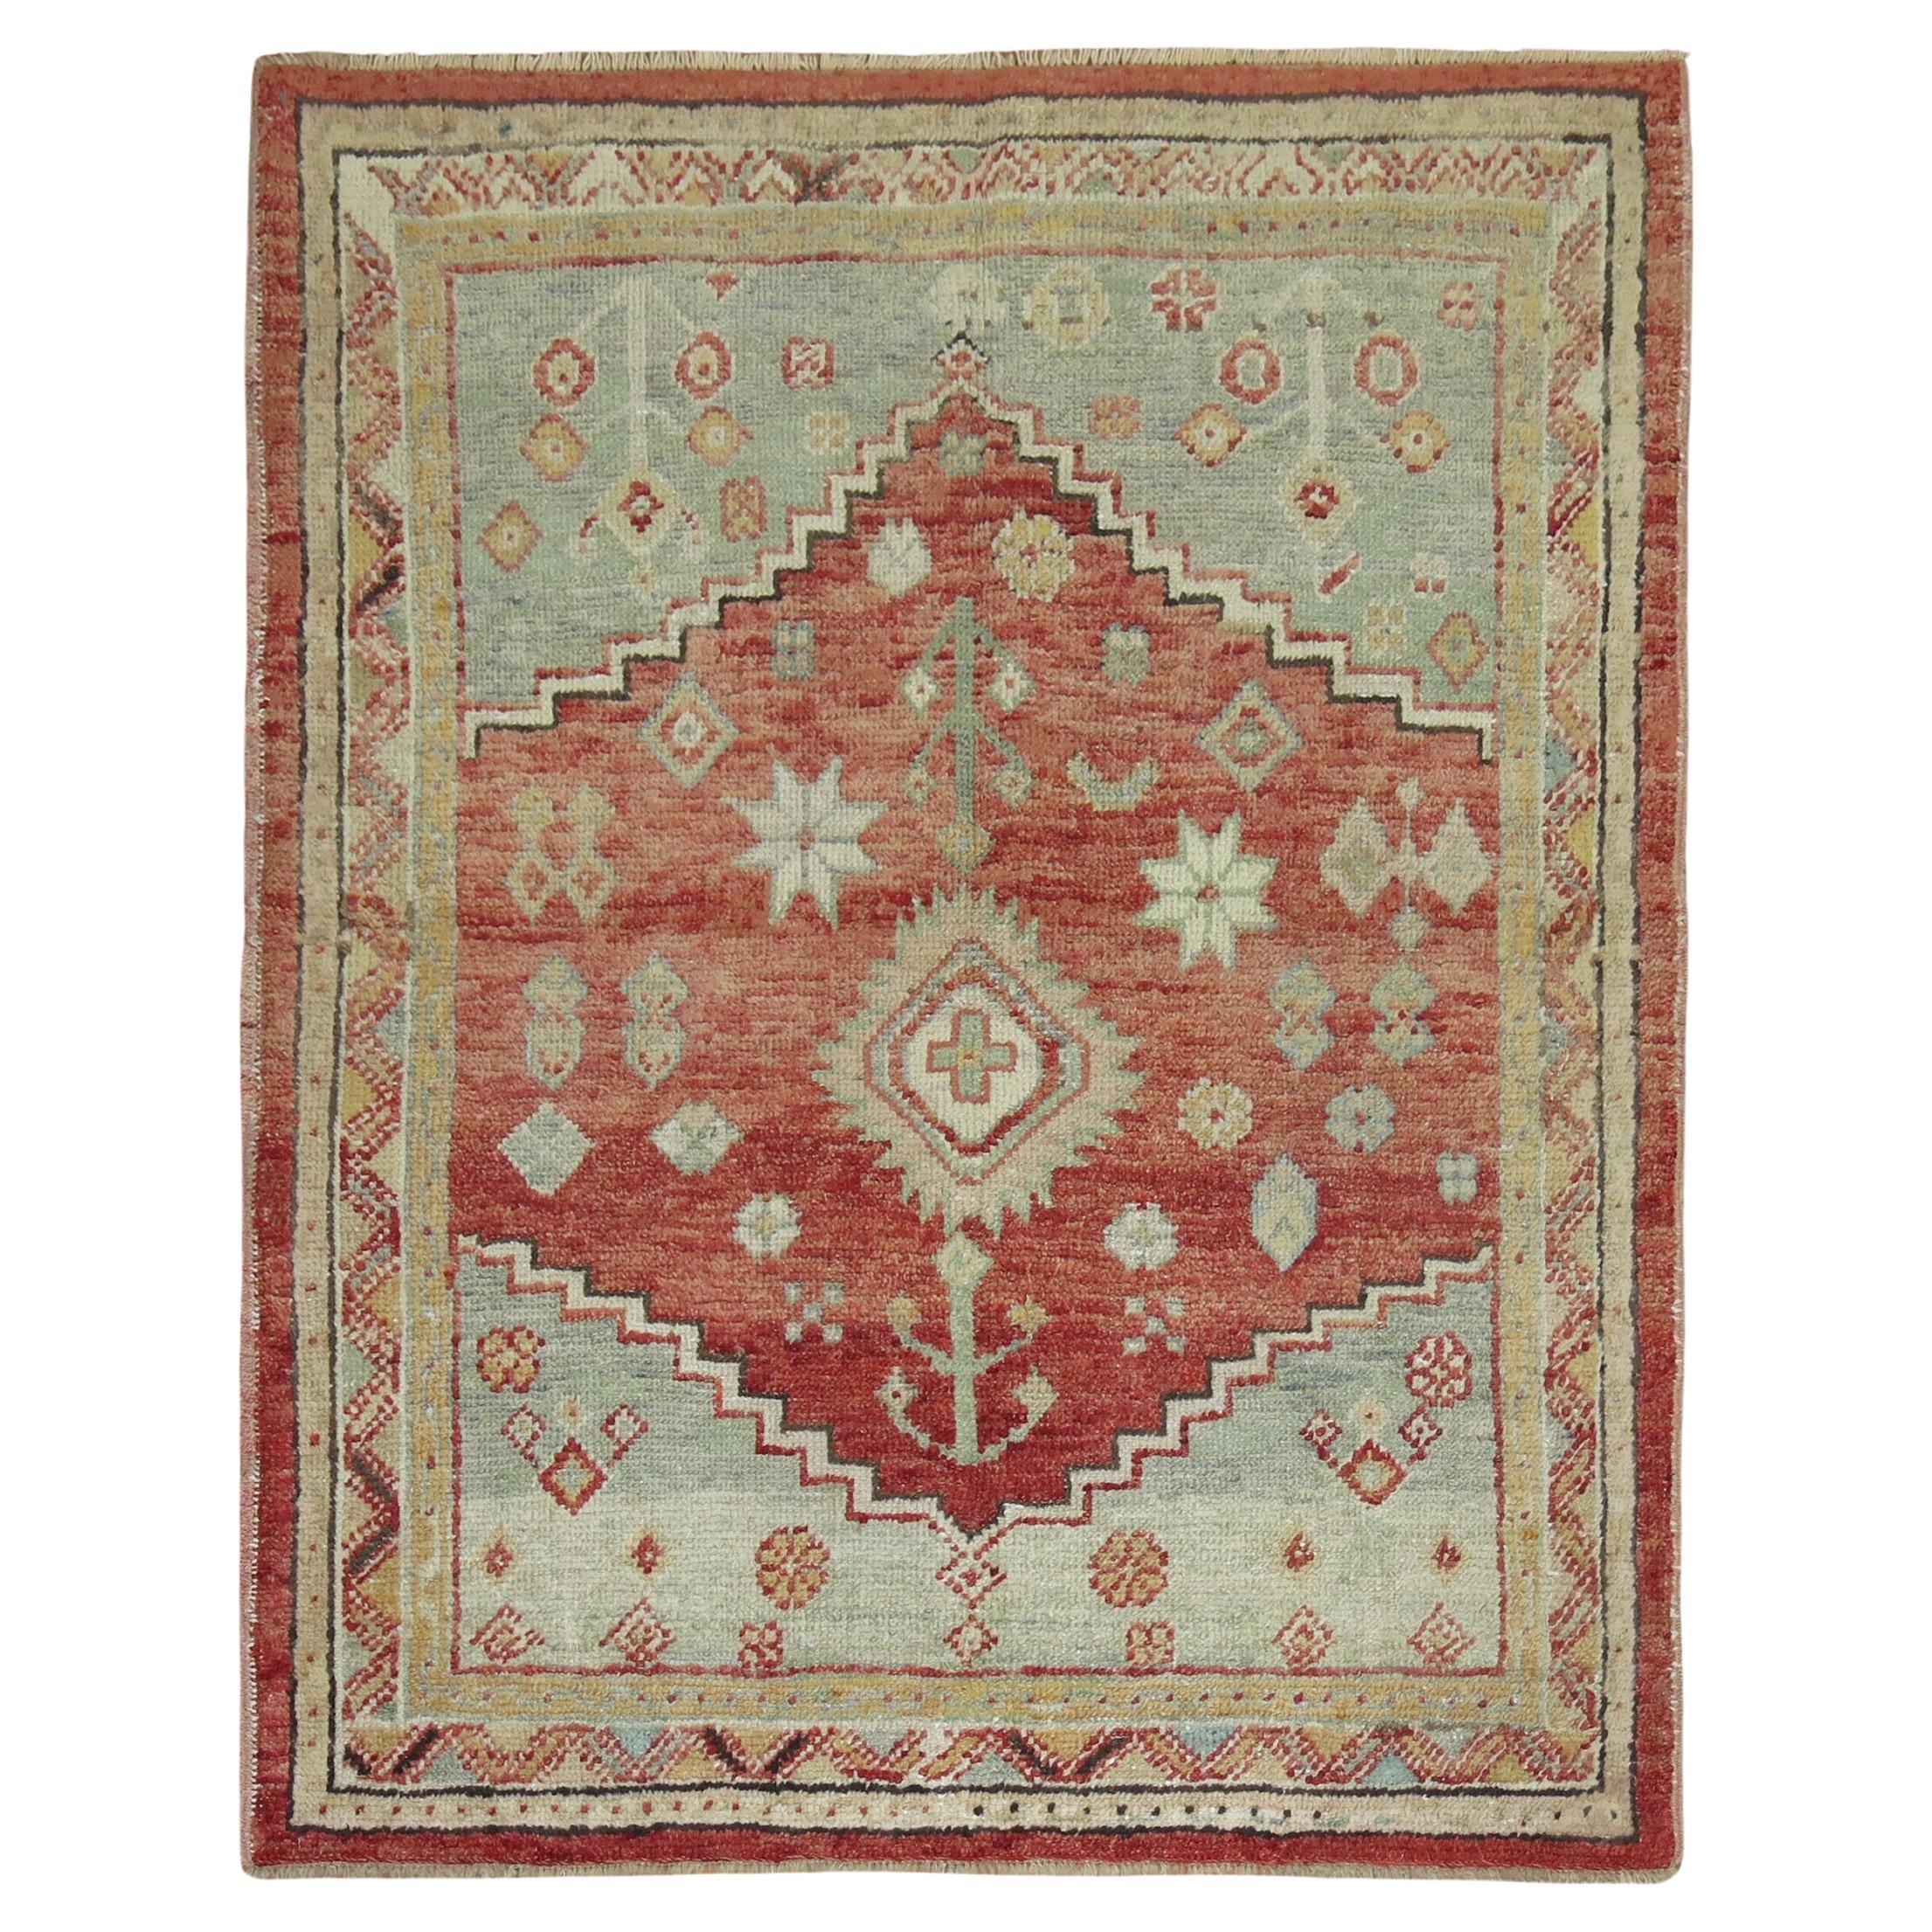 Antiker quadratischer türkischer Anatolischer Teppich aus der Zabihi-Kollektion